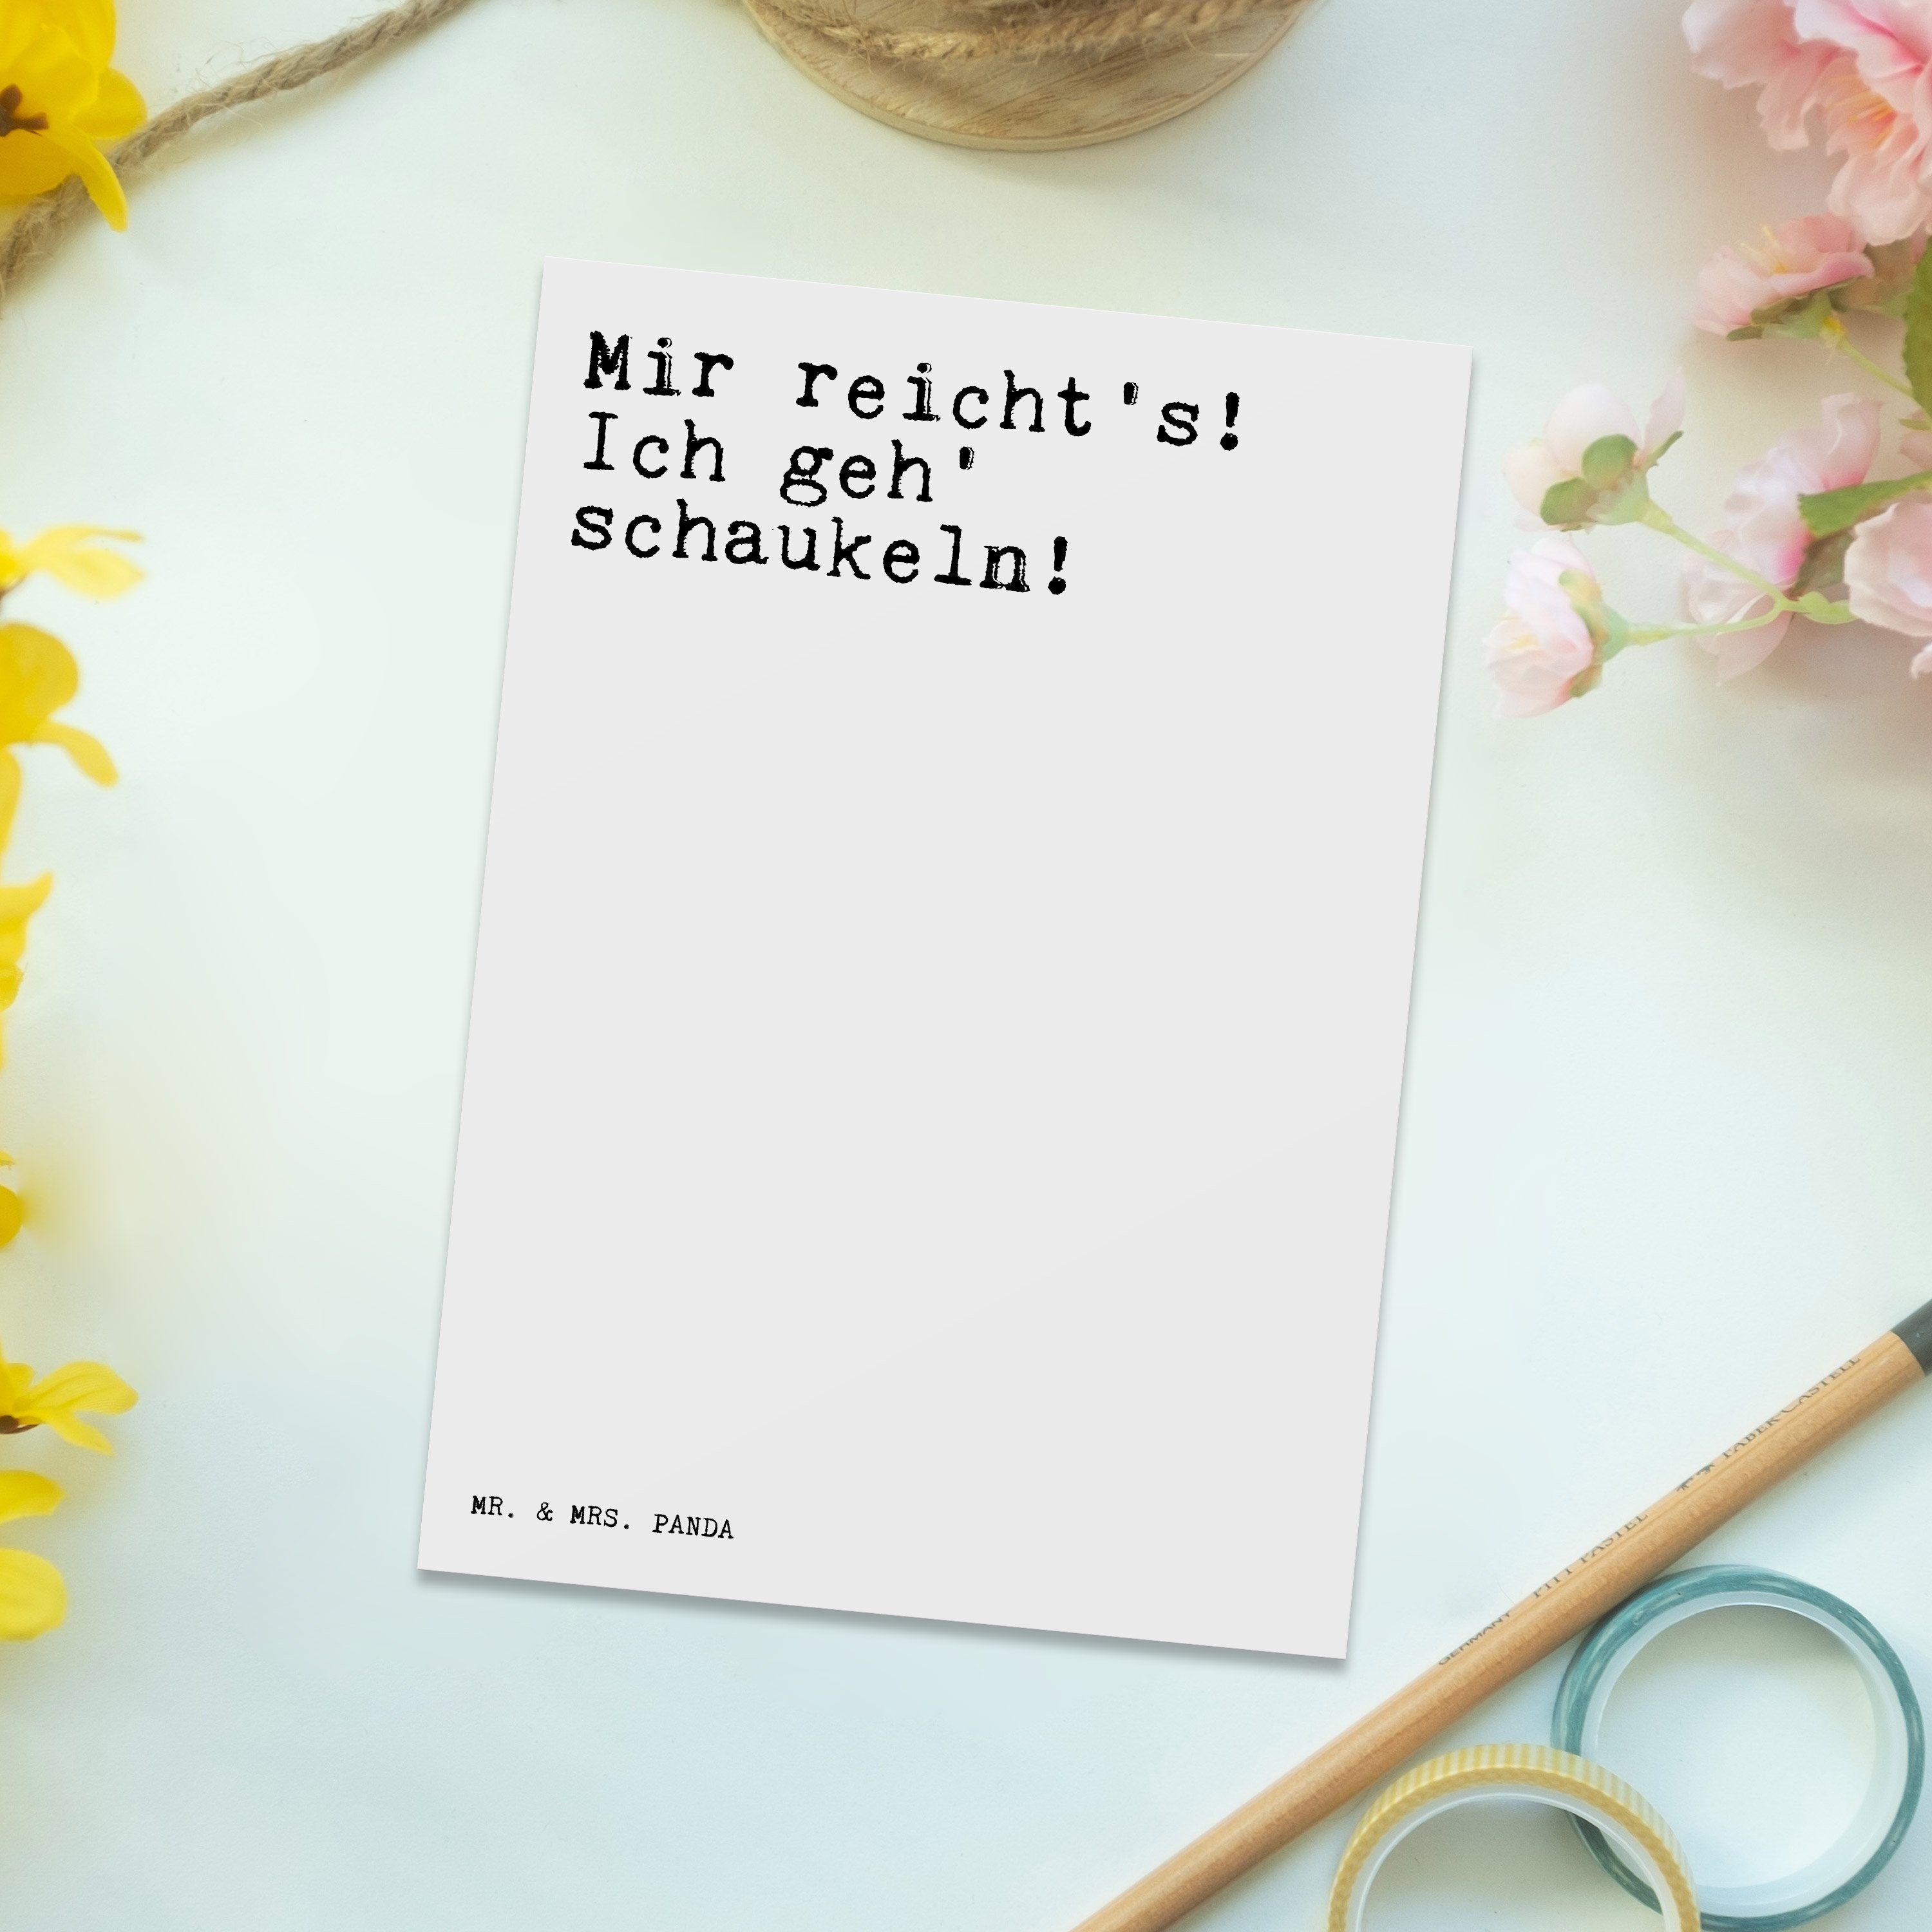 Mr. & Mrs. Panda Ich Geschenk, Kind, reicht's! - Spruch Postkarte Spr Spruch, - geh'... Weiß Mir